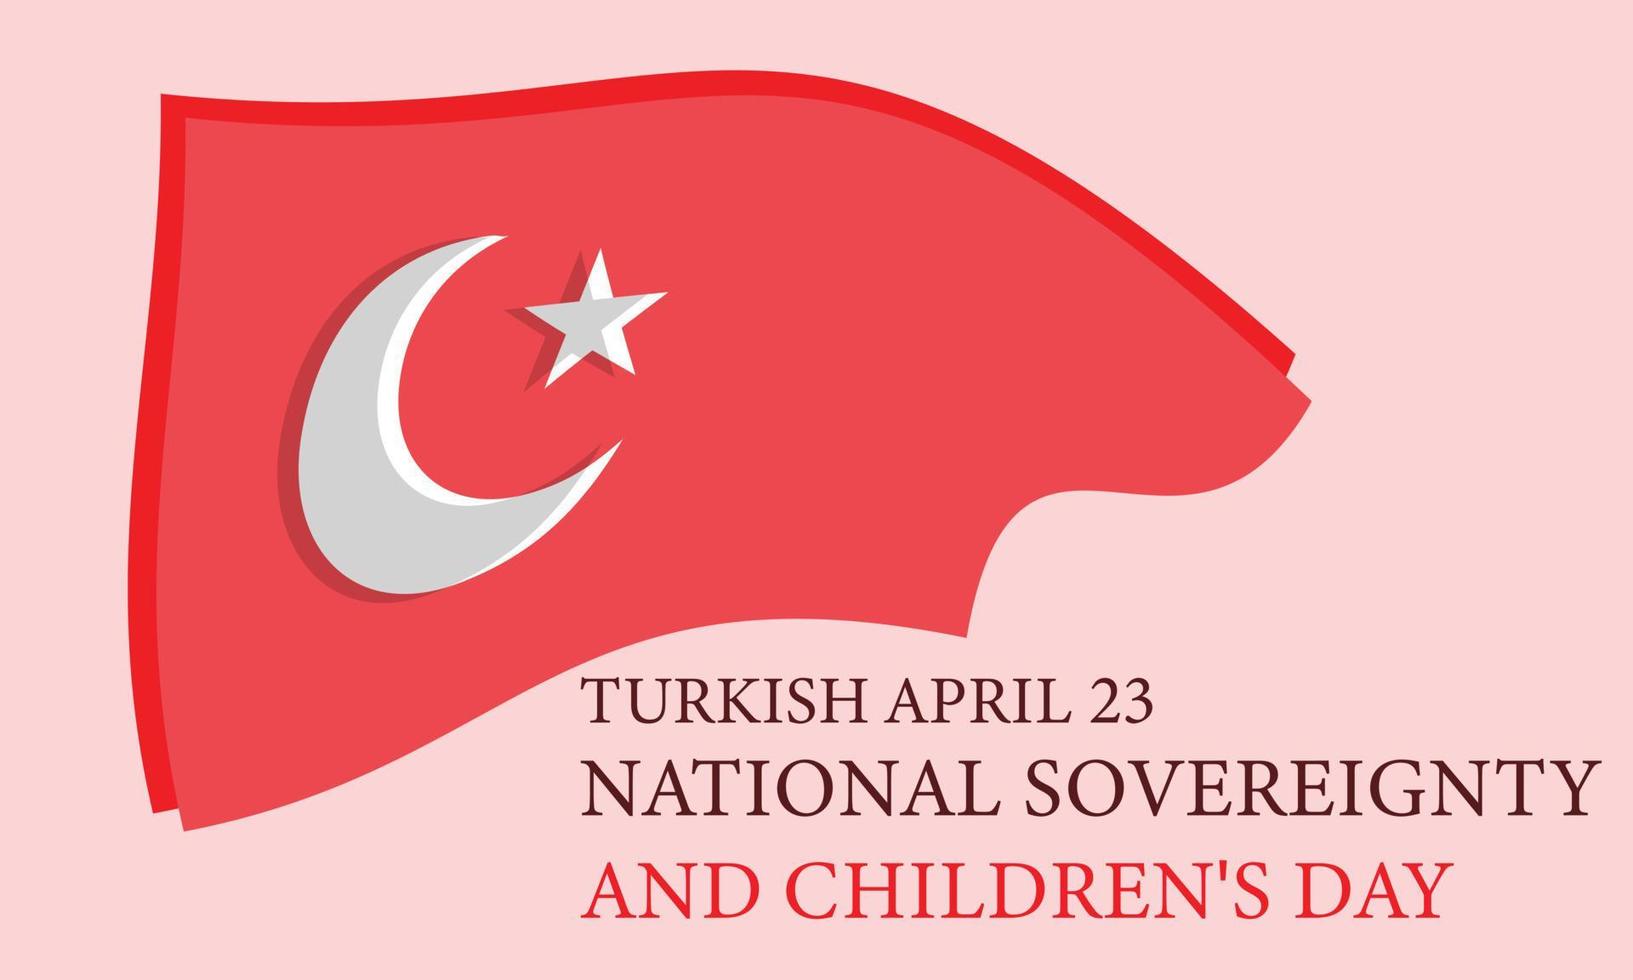 dinde avril 23, nationale la souveraineté et enfants journée. modèle pour arrière-plan, bannière, carte, affiche vecteur